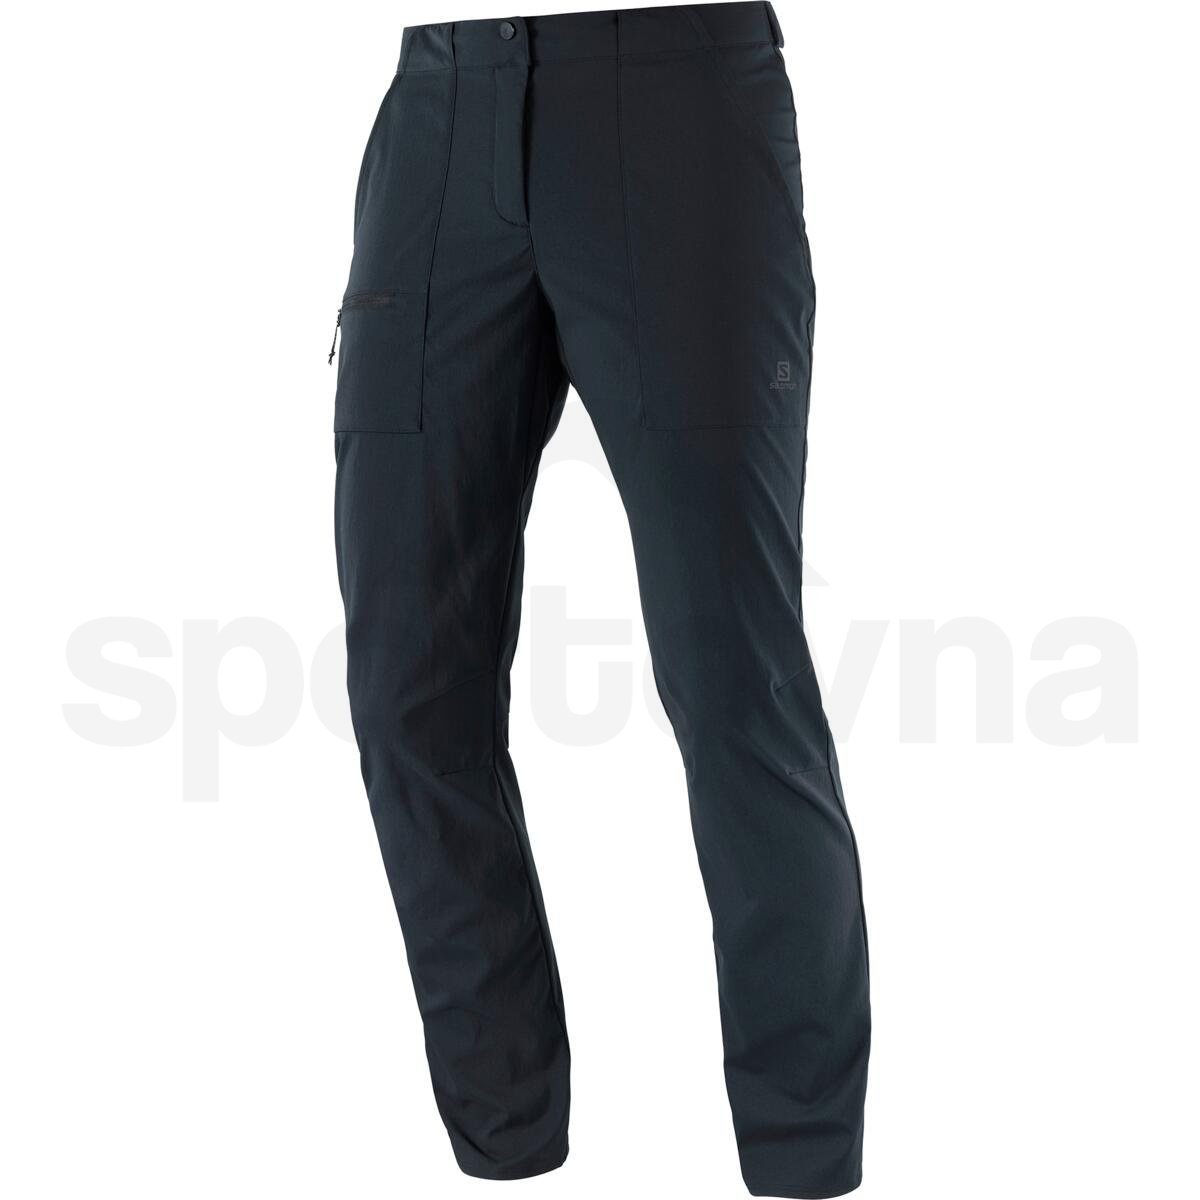 Kalhoty Salomon OUTRACK PANTS W - černá (zkrácená délka)